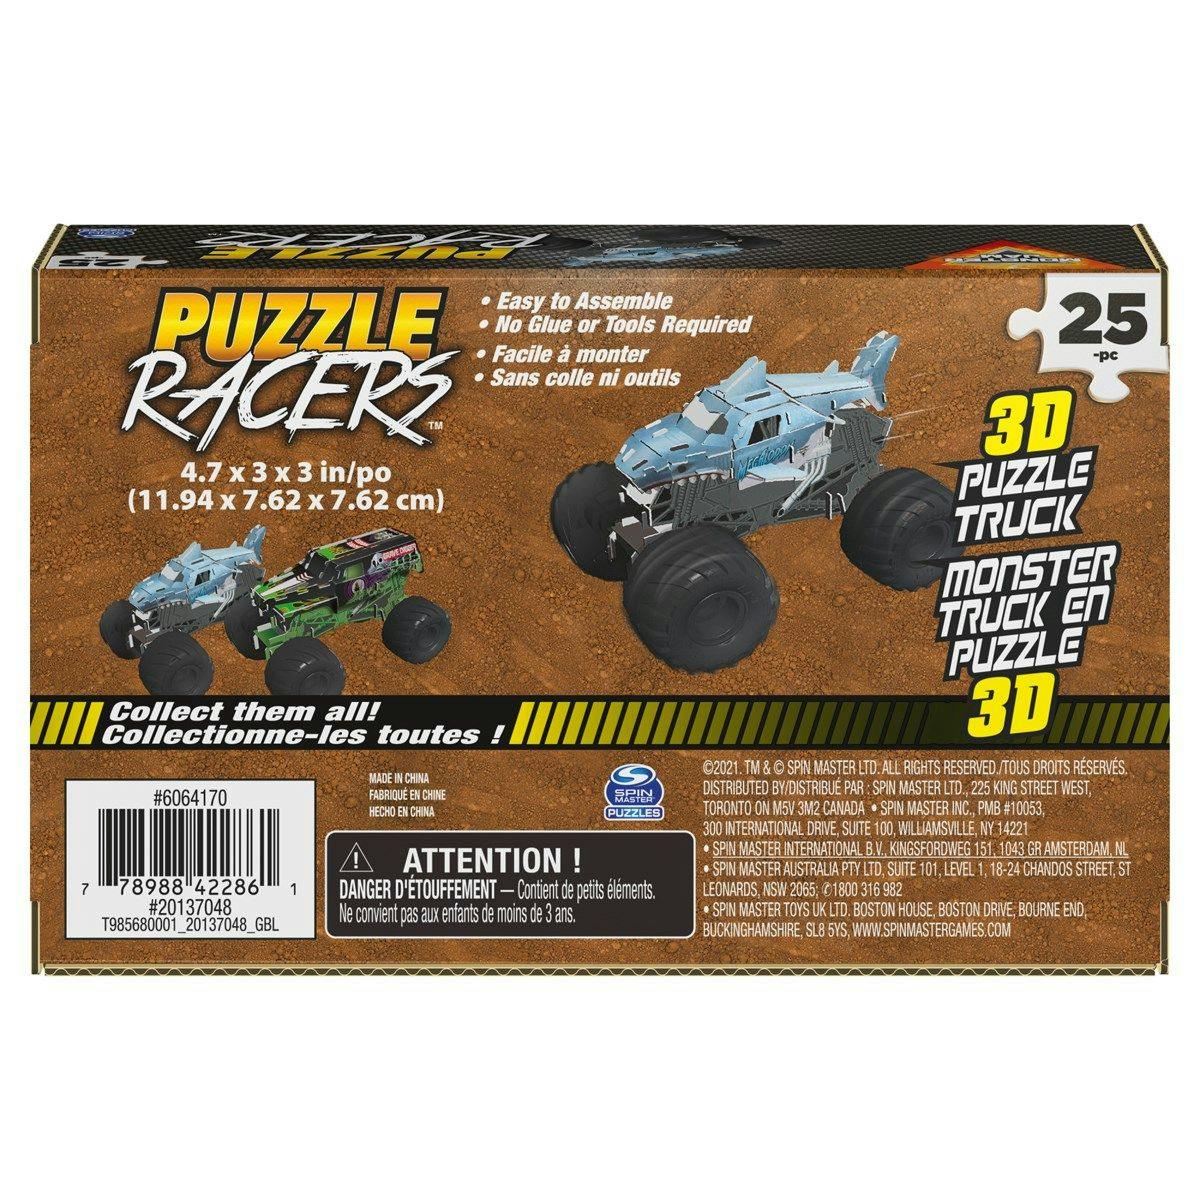 Monster Jam 3D Puzzle Racers Megalodon